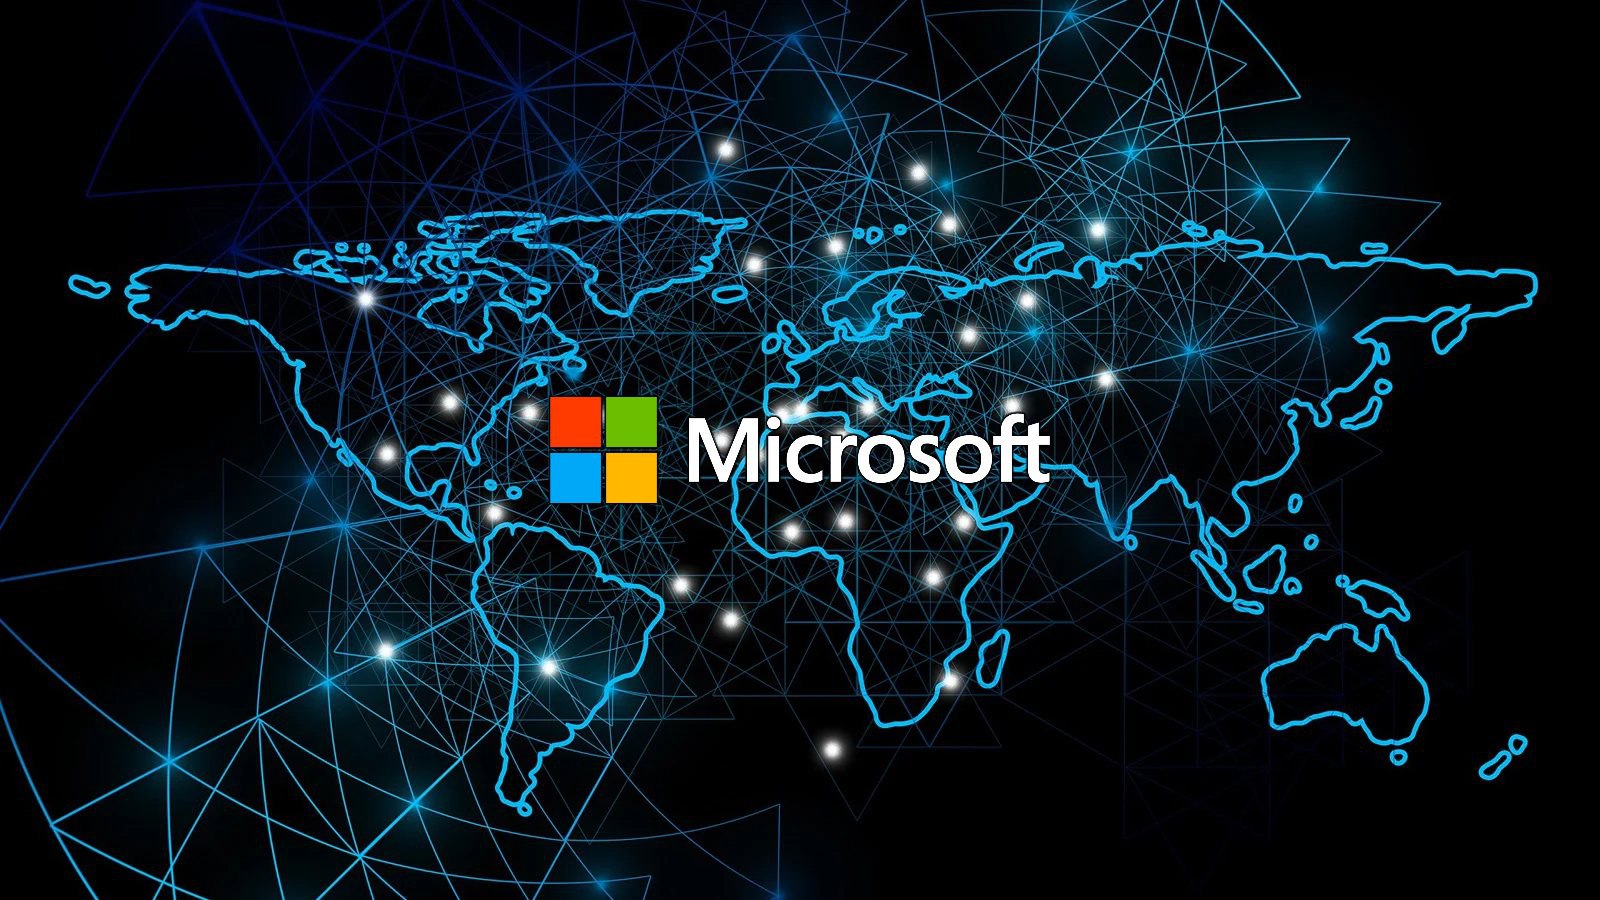 Microsoft заявляет, что хакеры использовали уязвимости в веб-сервере Boa, который был снят с производства в 2005 году, но широко распространен в  IoT-устройствах. Атака на энергетический сектор Индии, хакеры по сути проникли во внутреннюю сеть через камеры